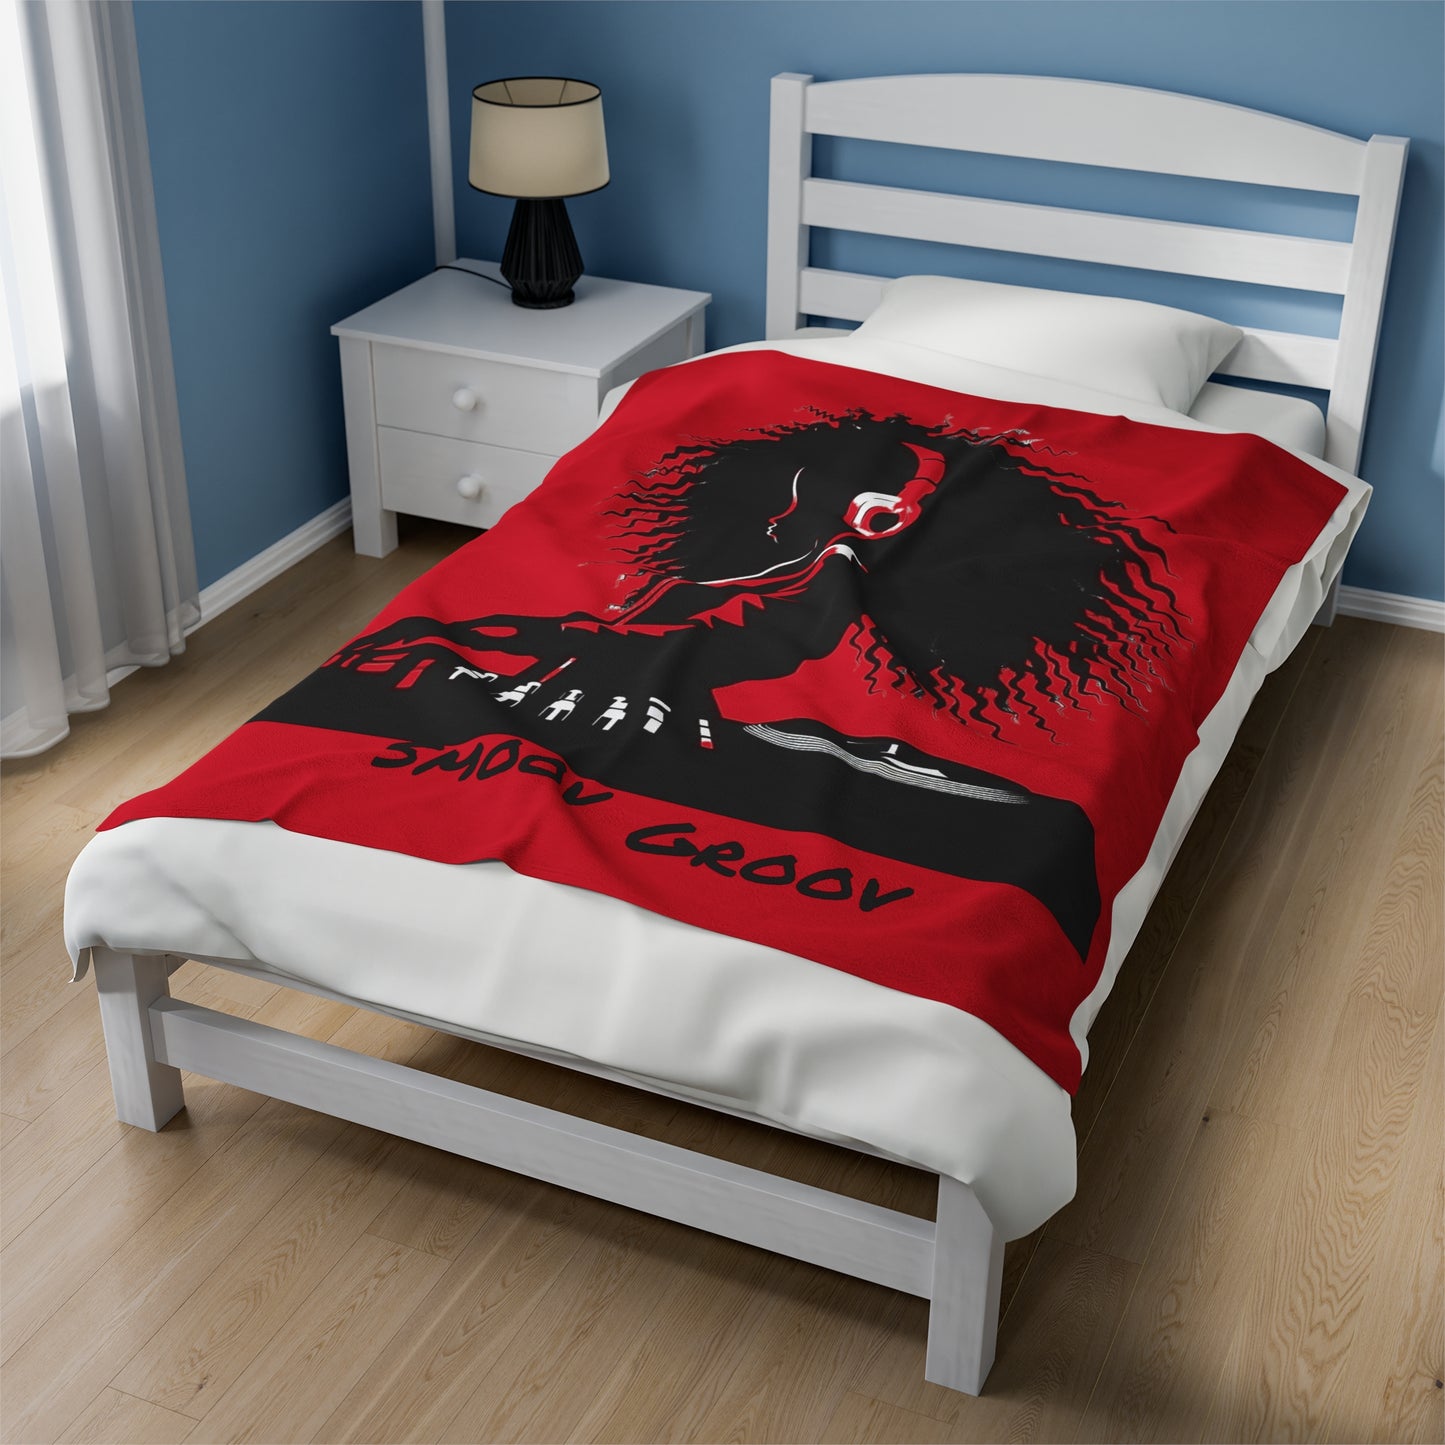 Smoov Red Velveteen Plush Blanket